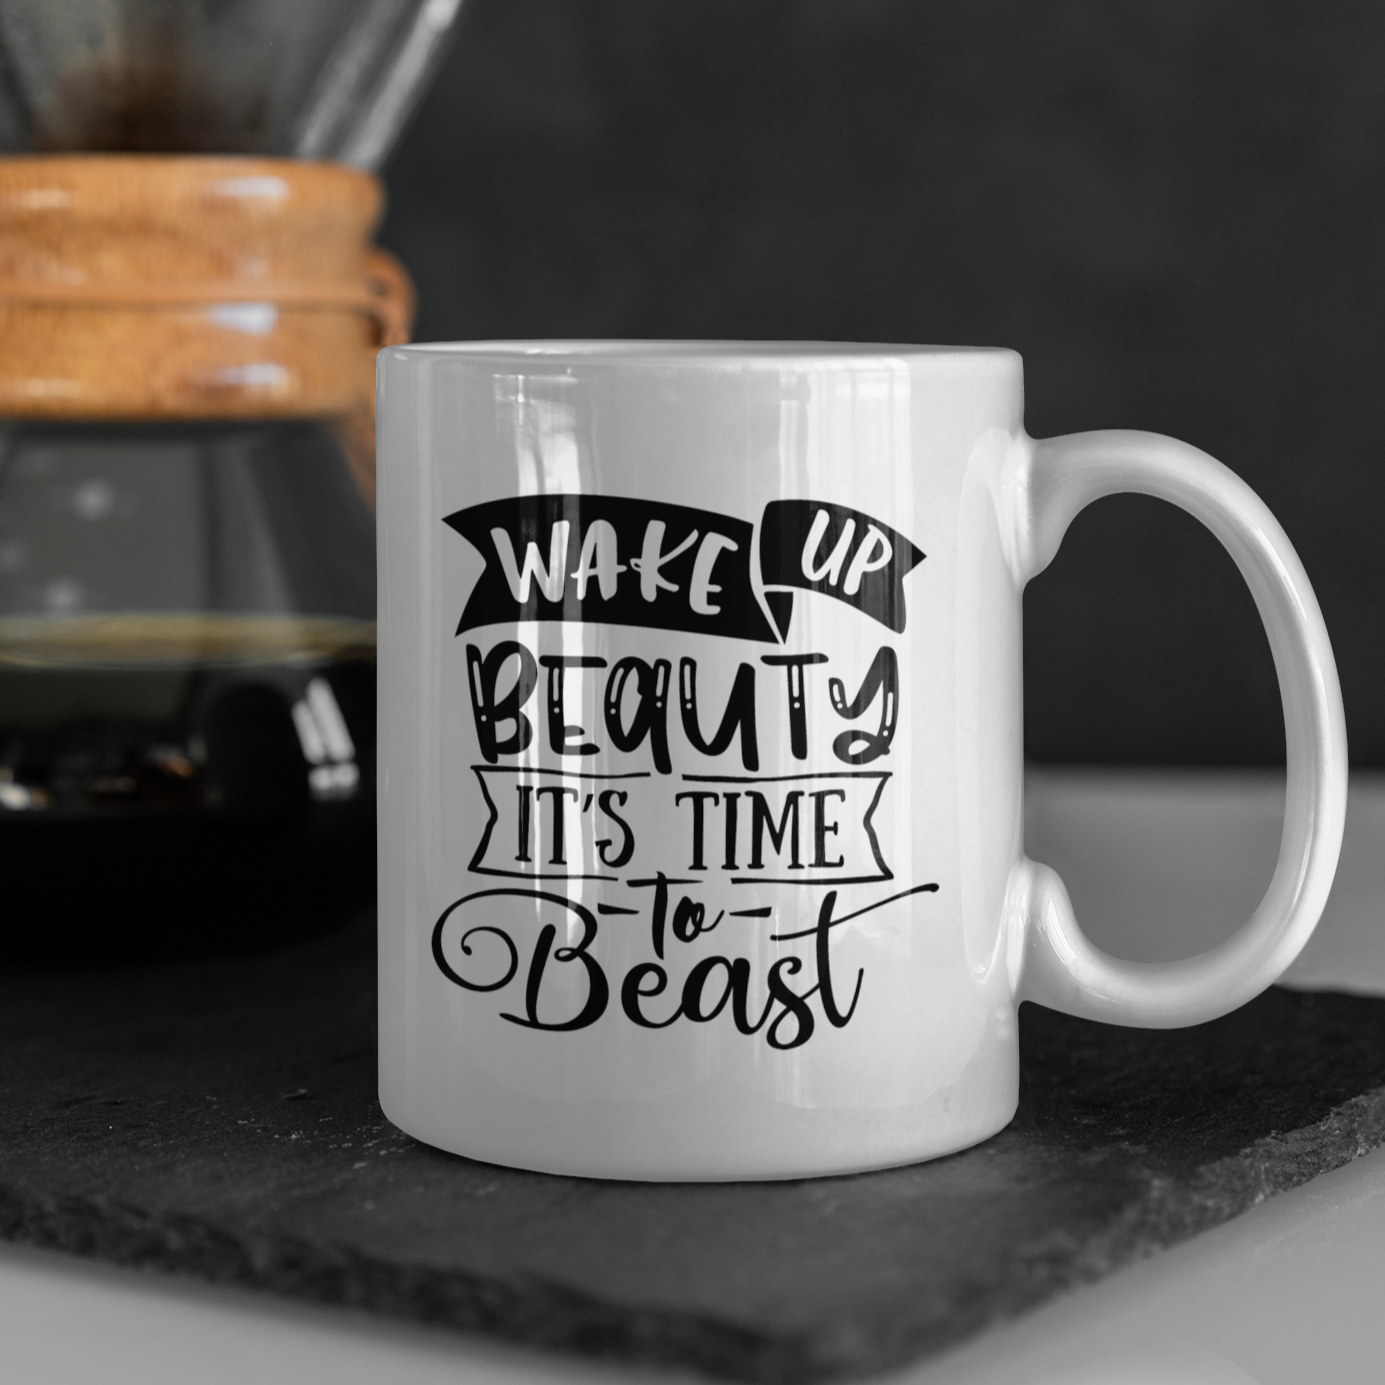 Wake Up Beauty It's Time To Beast Mug